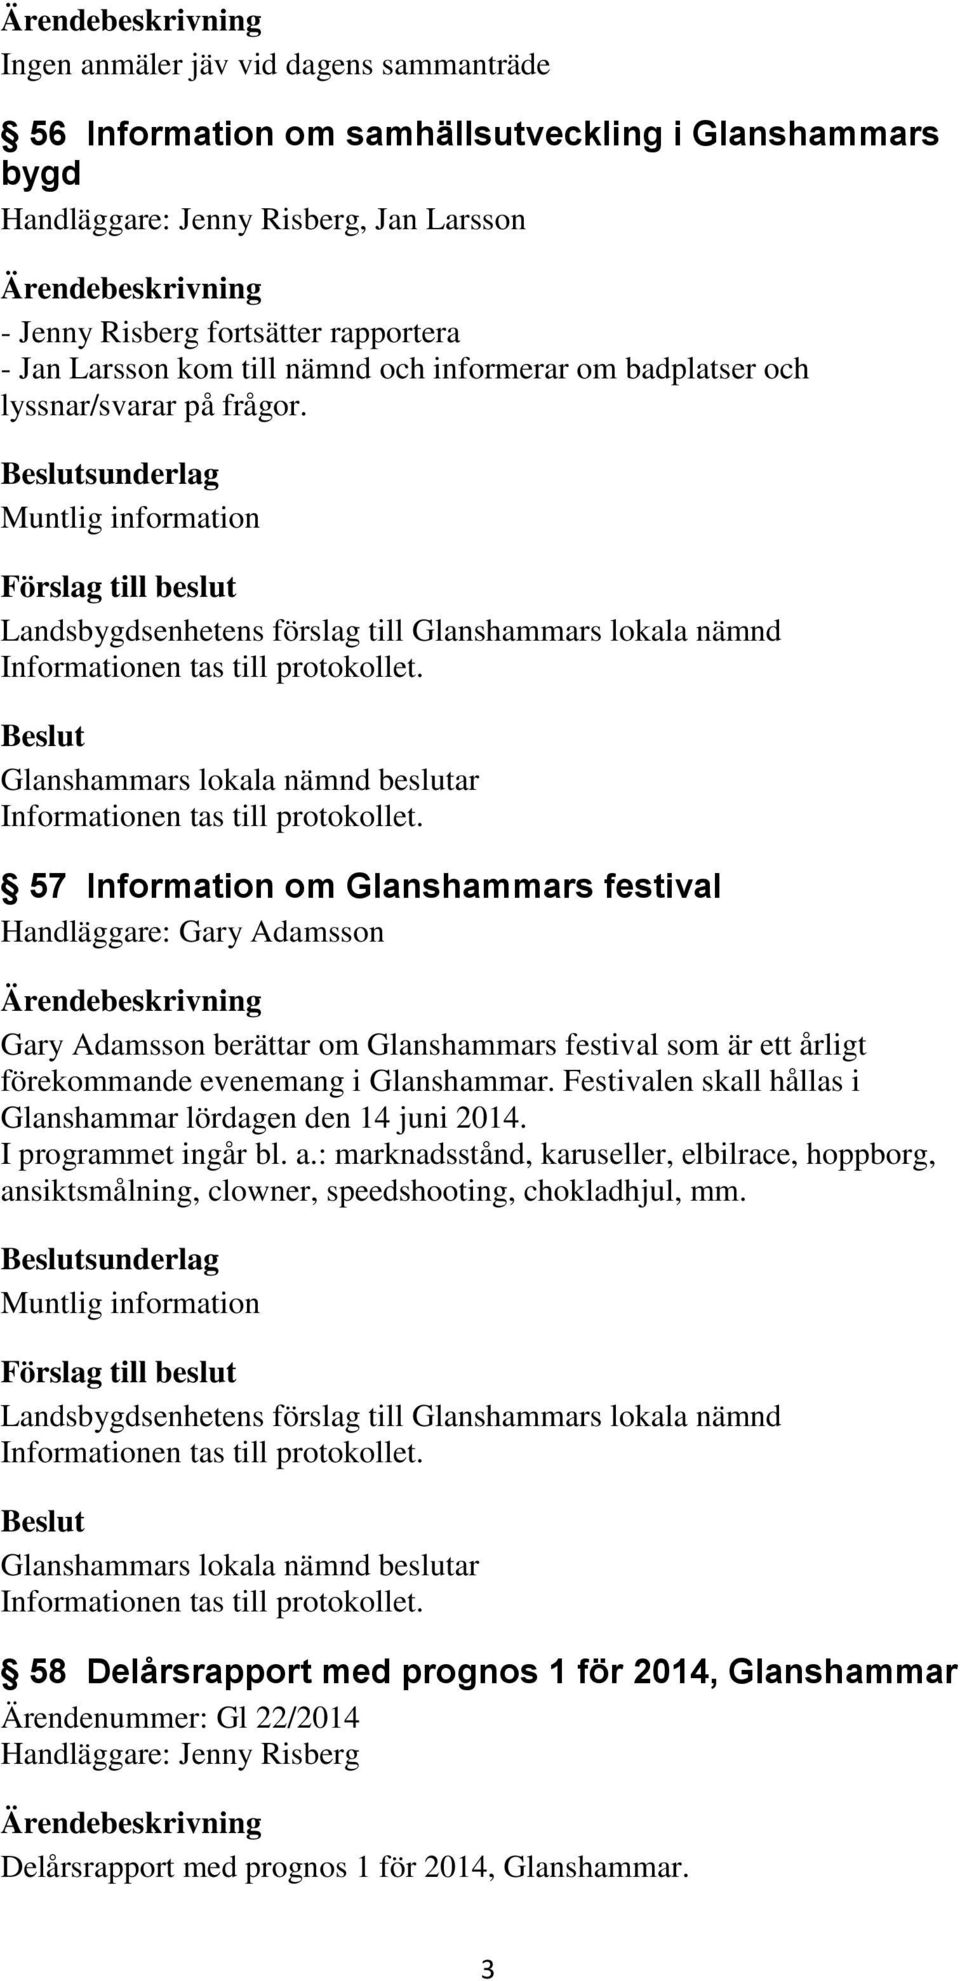 sunderlag 57 Information om Glanshammars festival Handläggare: Gary Adamsson Gary Adamsson berättar om Glanshammars festival som är ett årligt förekommande evenemang i Glanshammar.